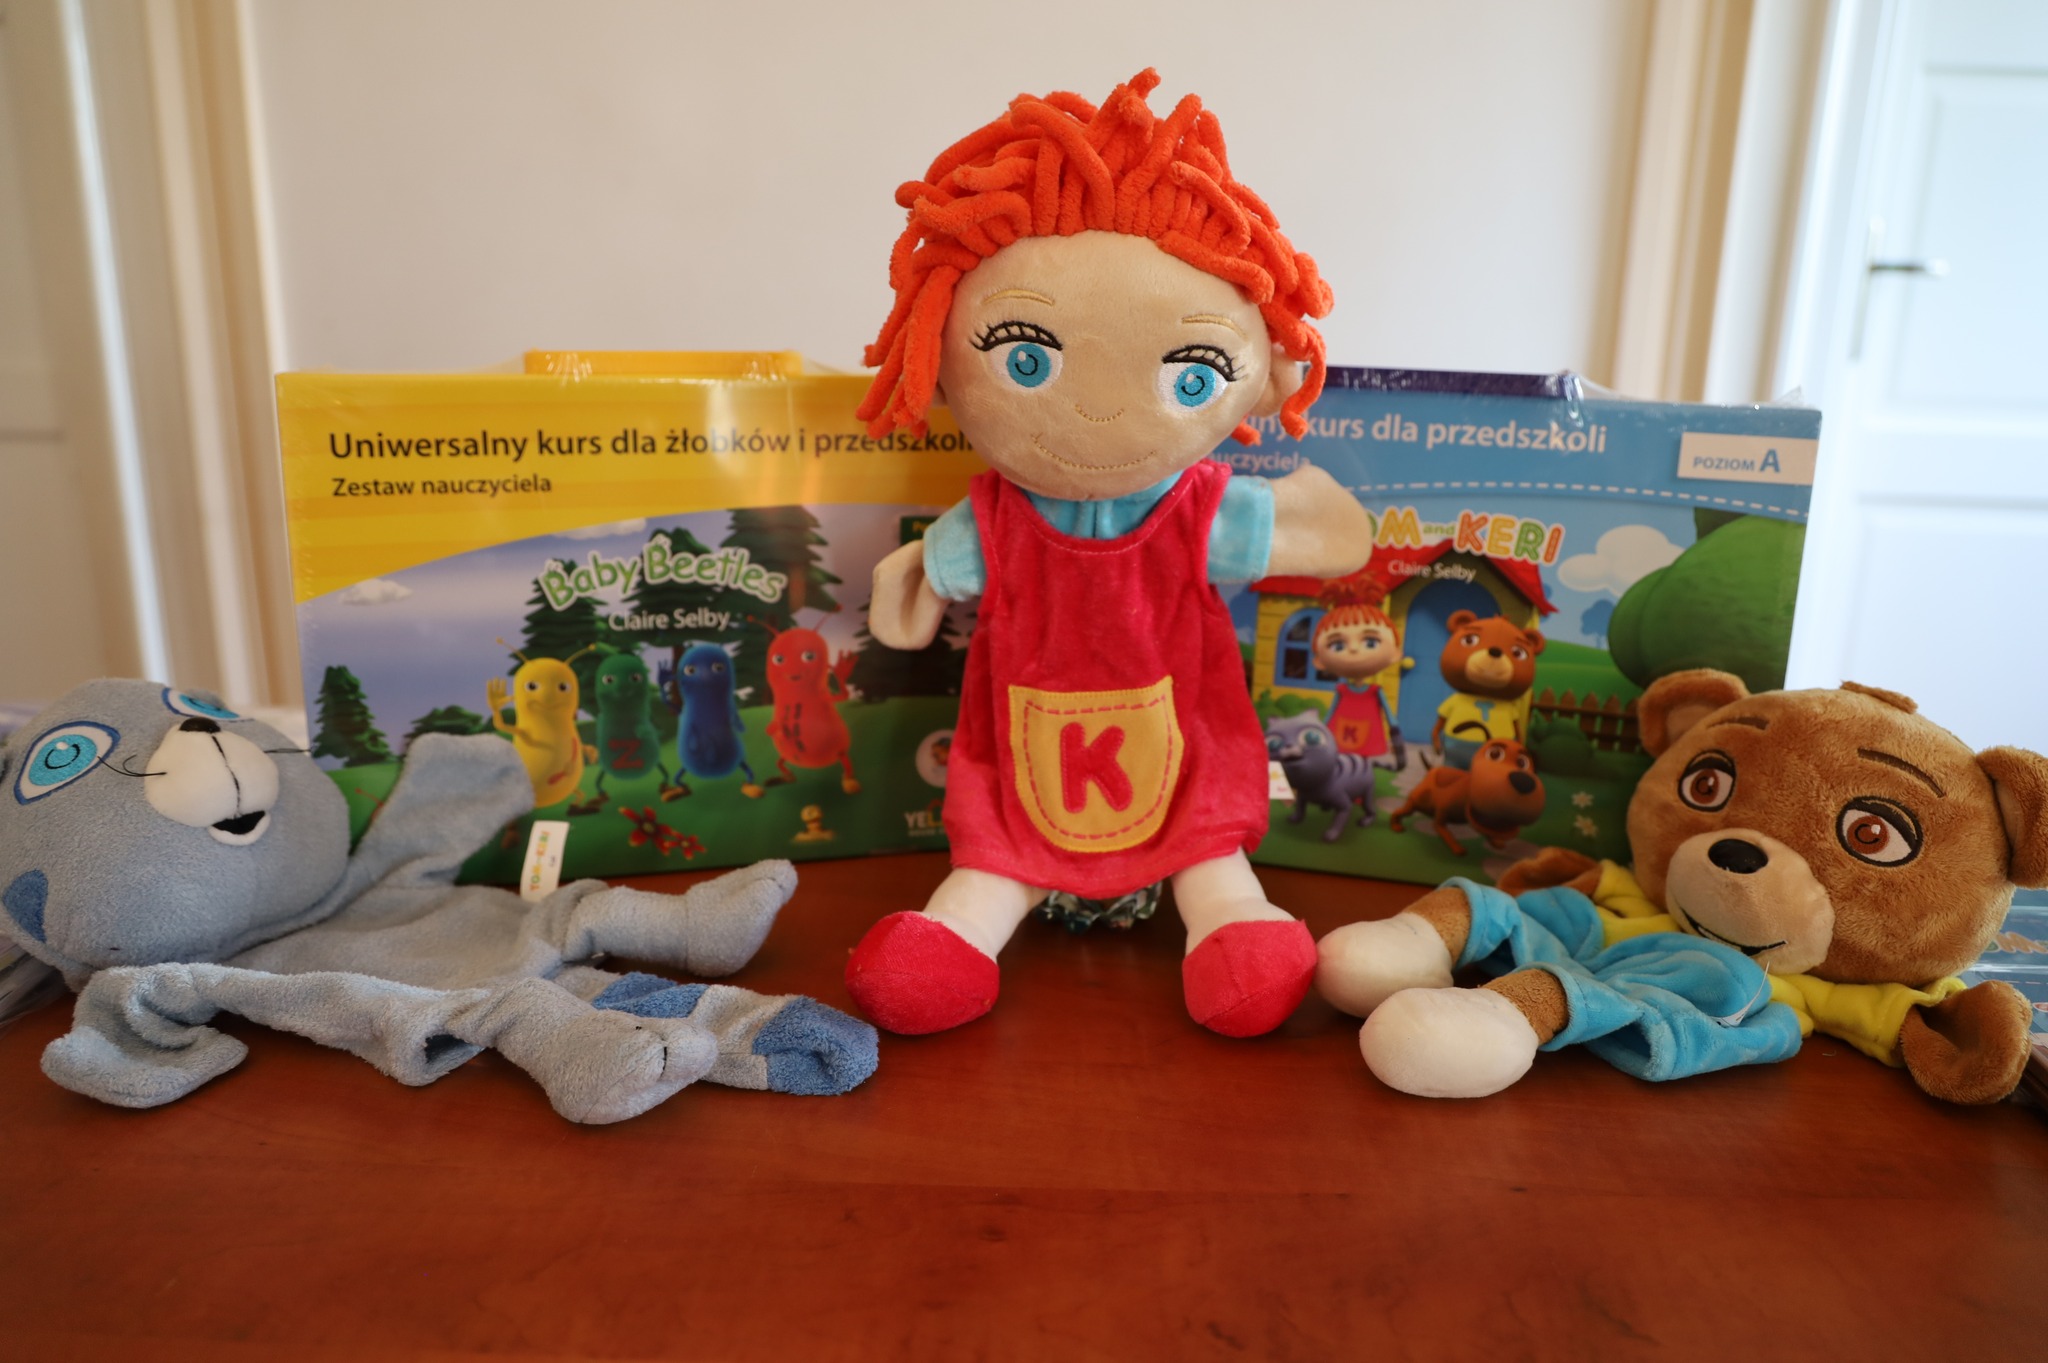 Materiały edukacyjne Międzynarodowego Programu Powszechnej Dwujęzyczności przeznaczone dla dzieci oraz nauczycieli z ostrowskich przedszkoli.